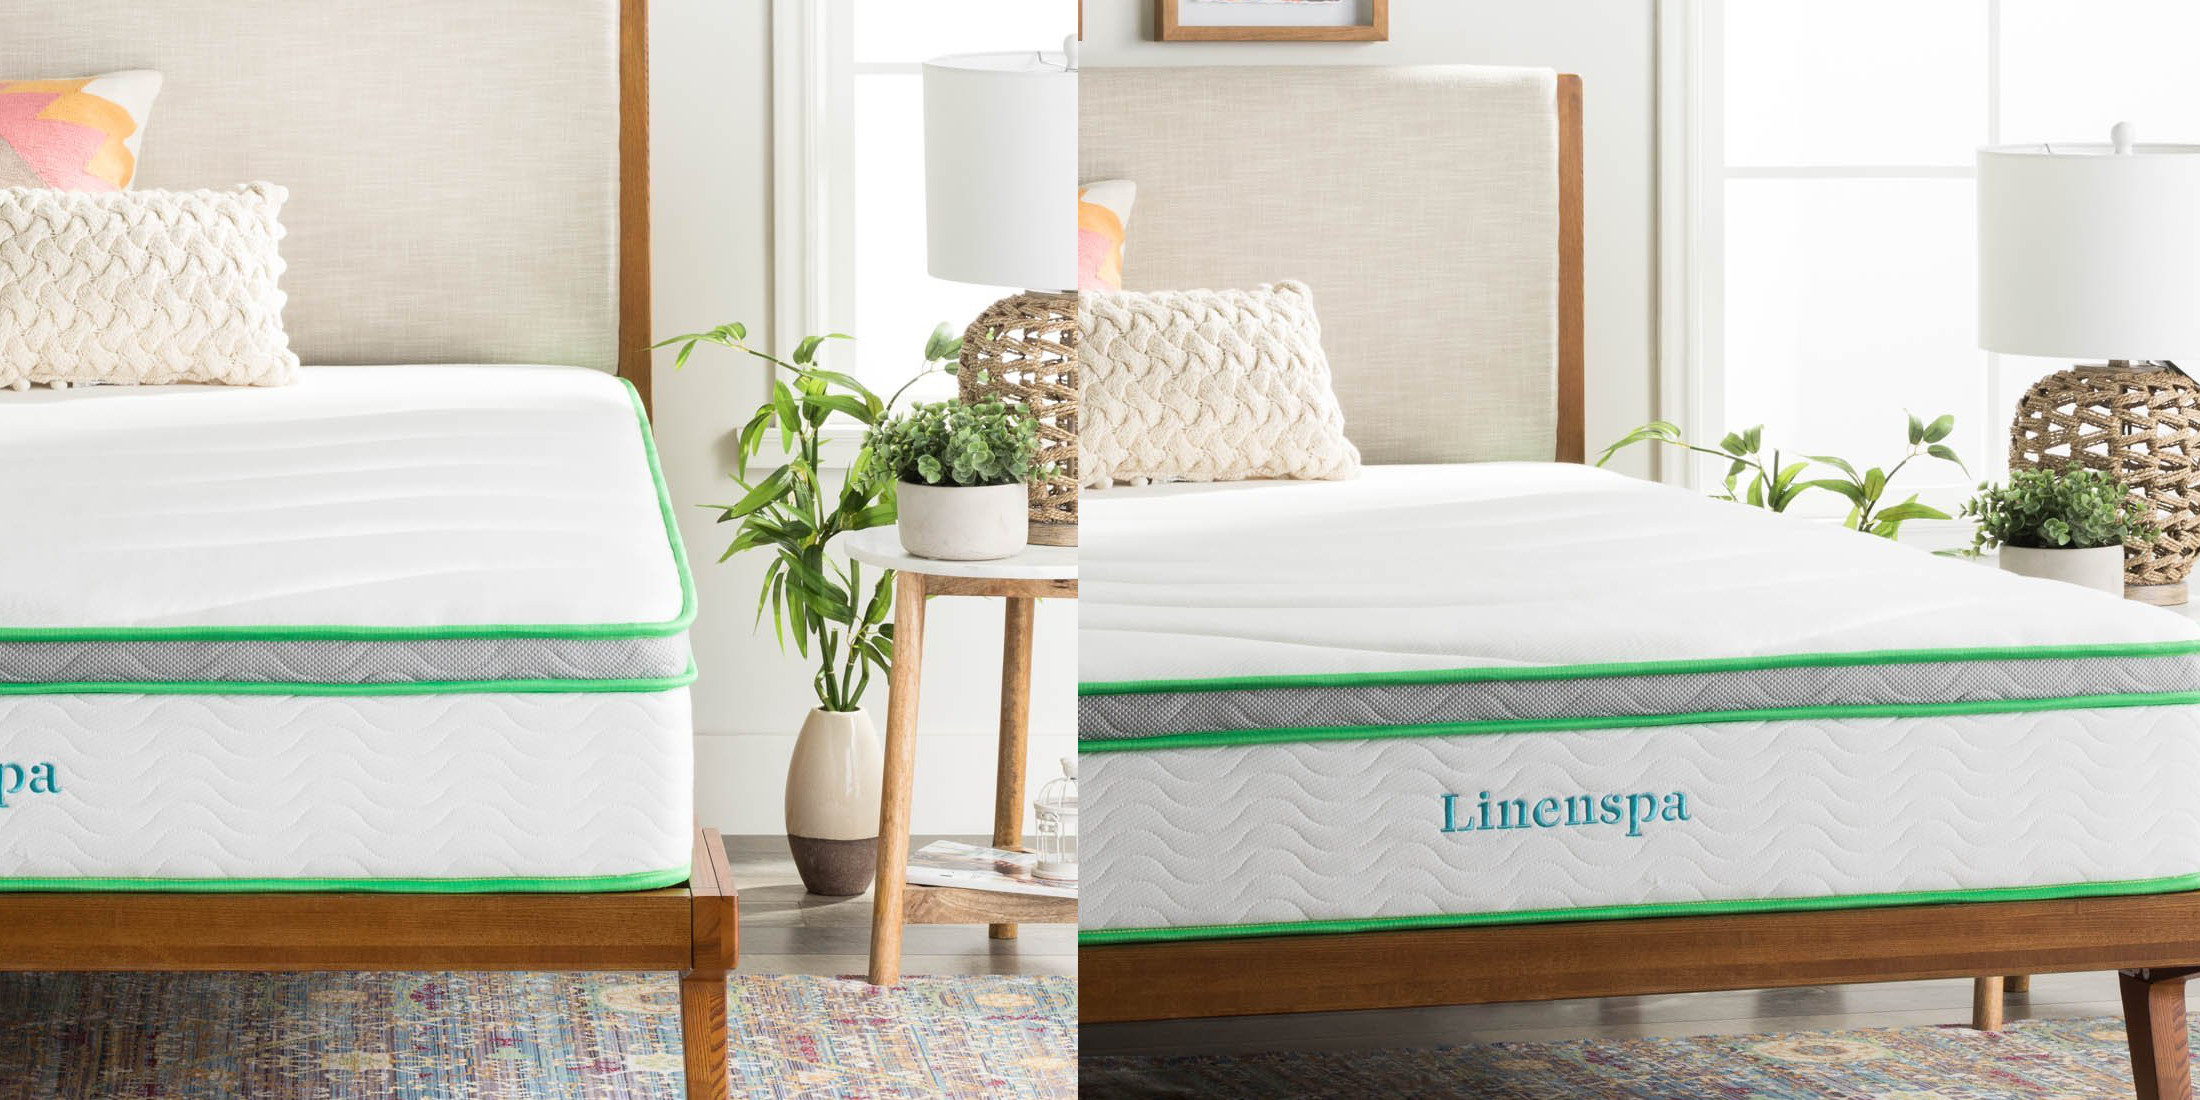 linenspa full mattress 10 inch